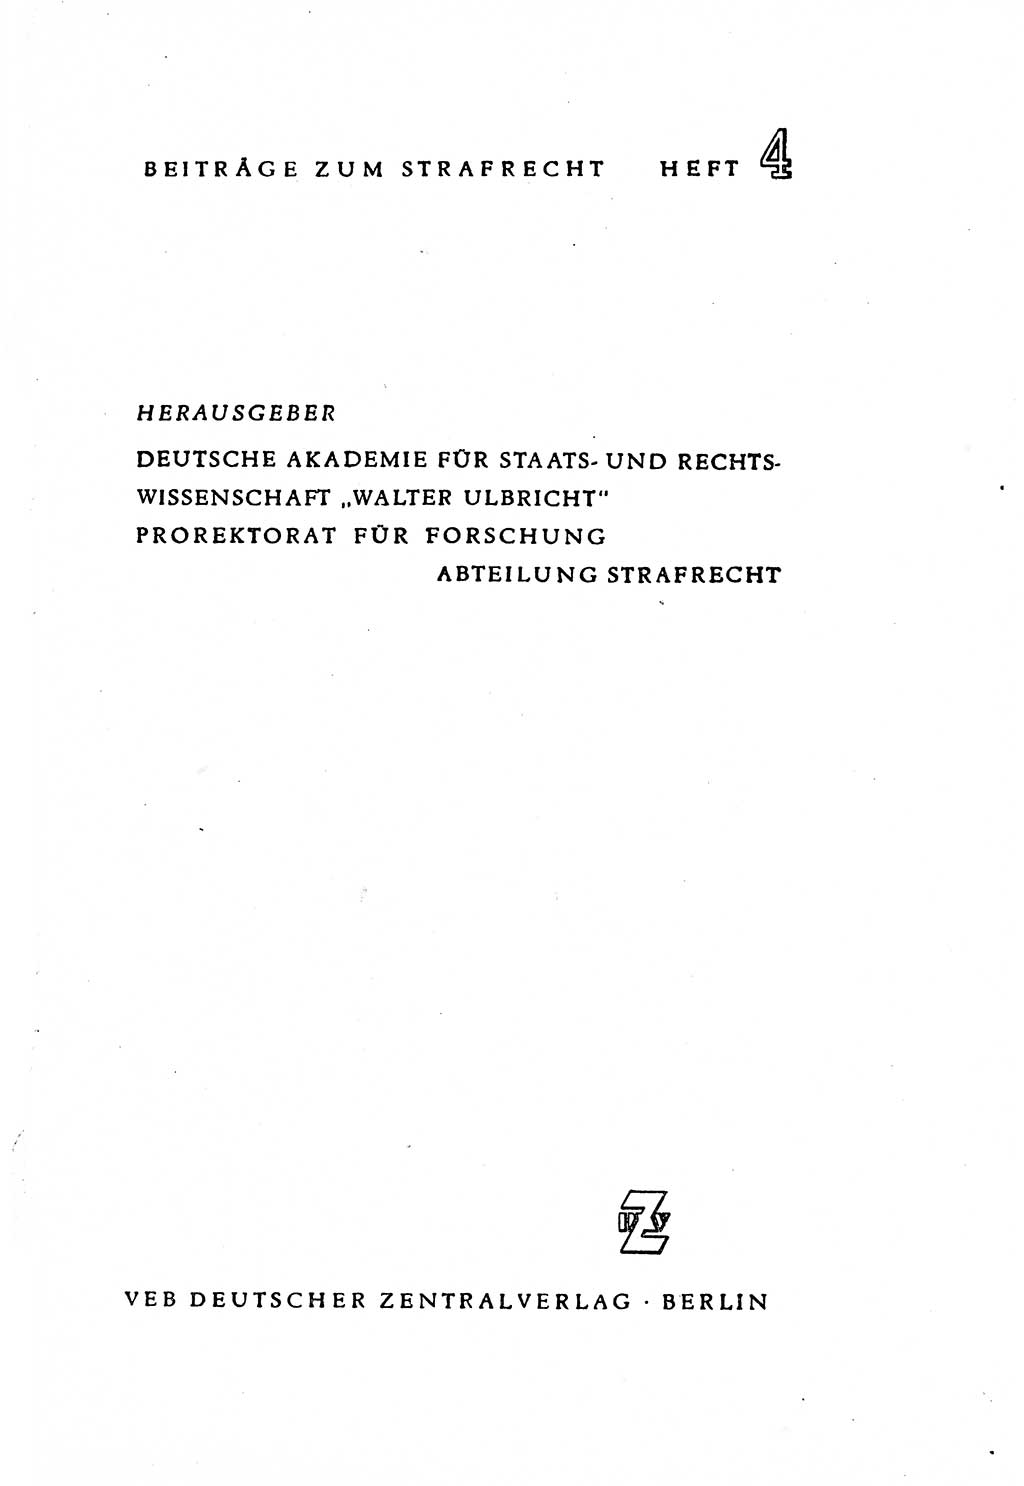 Zur Entwicklung des sozialistischen Strafrechts der Deutschen Demokratischen Republik (DDR) 1960, Seite 1 (Entw. soz. Strafr. DDR 1960, S. 1)